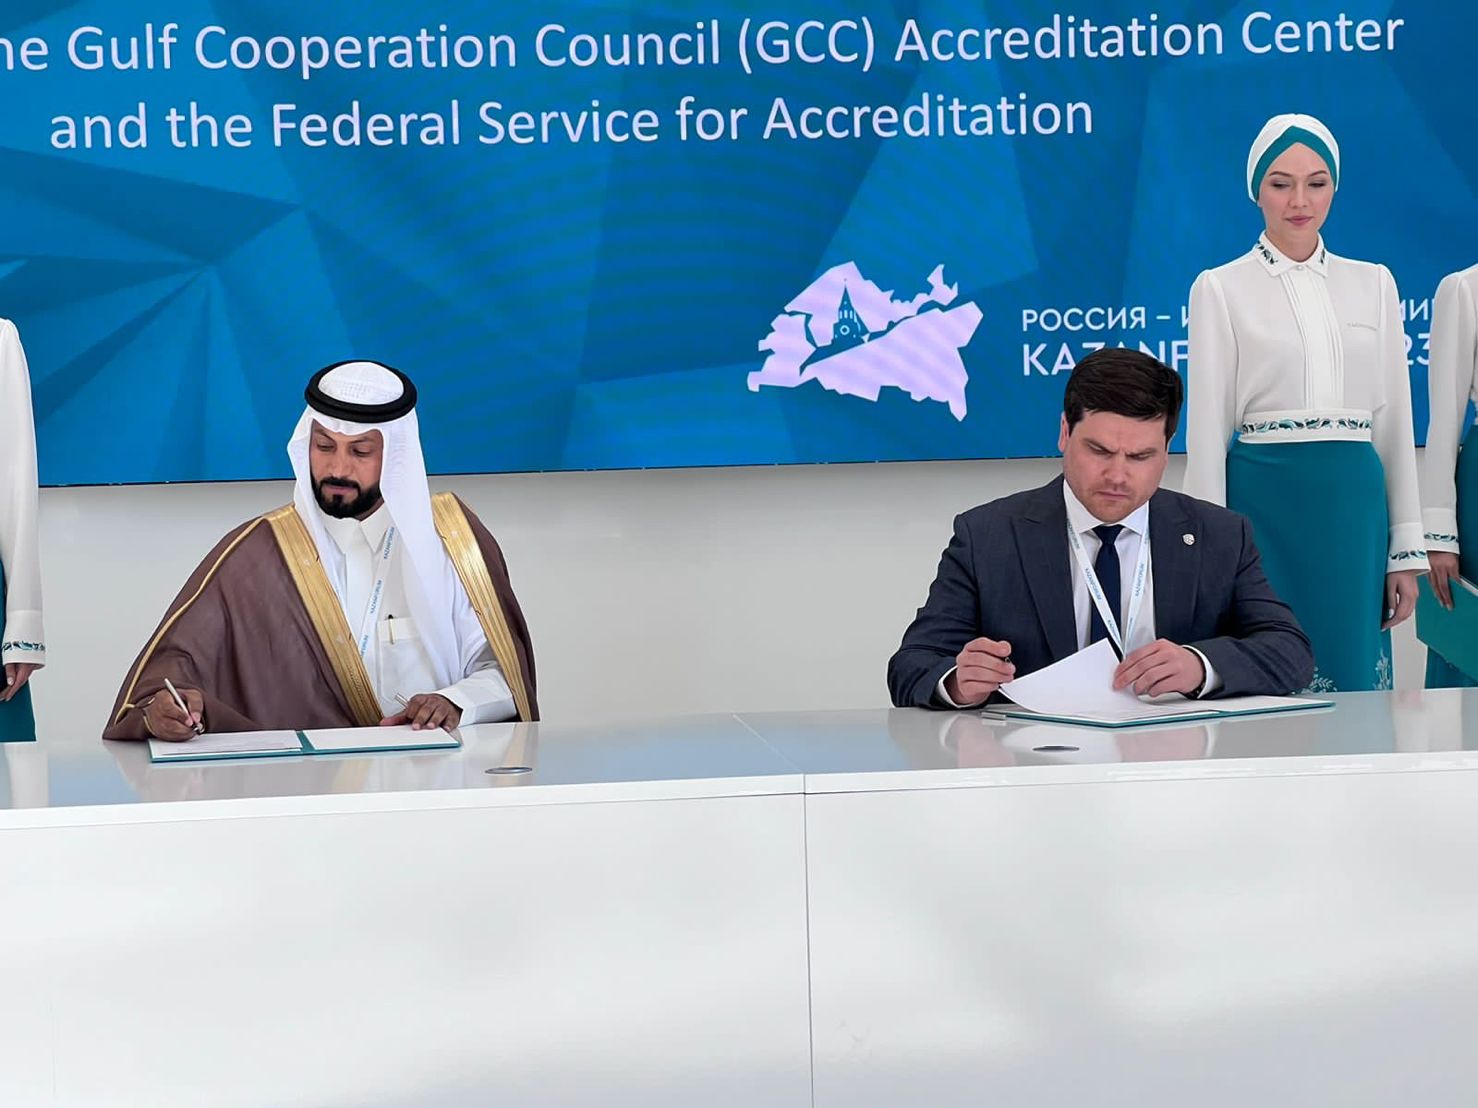 توقيع مذكرة التفاهم بين مركز الاتحاد الروسي لخدمات الاعتماد و مركز الاعتماد الخليجي